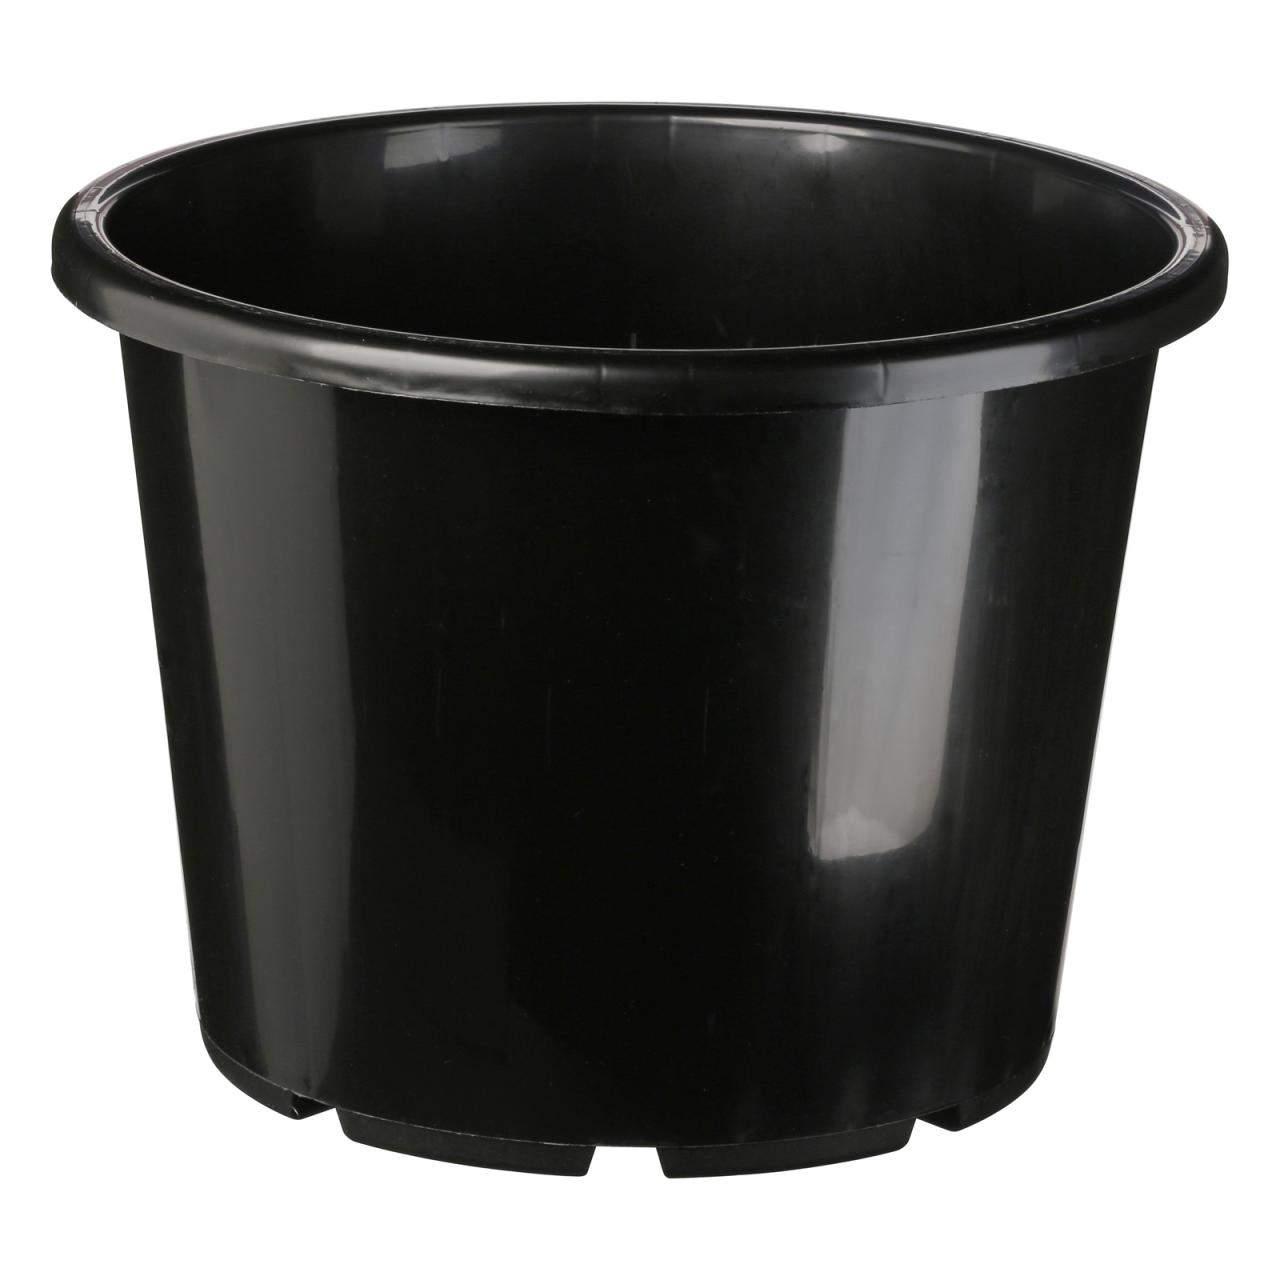 Hanging Plants Indoor | Bunnings Black Plastic Pot: A Versatile Solution for Gardening